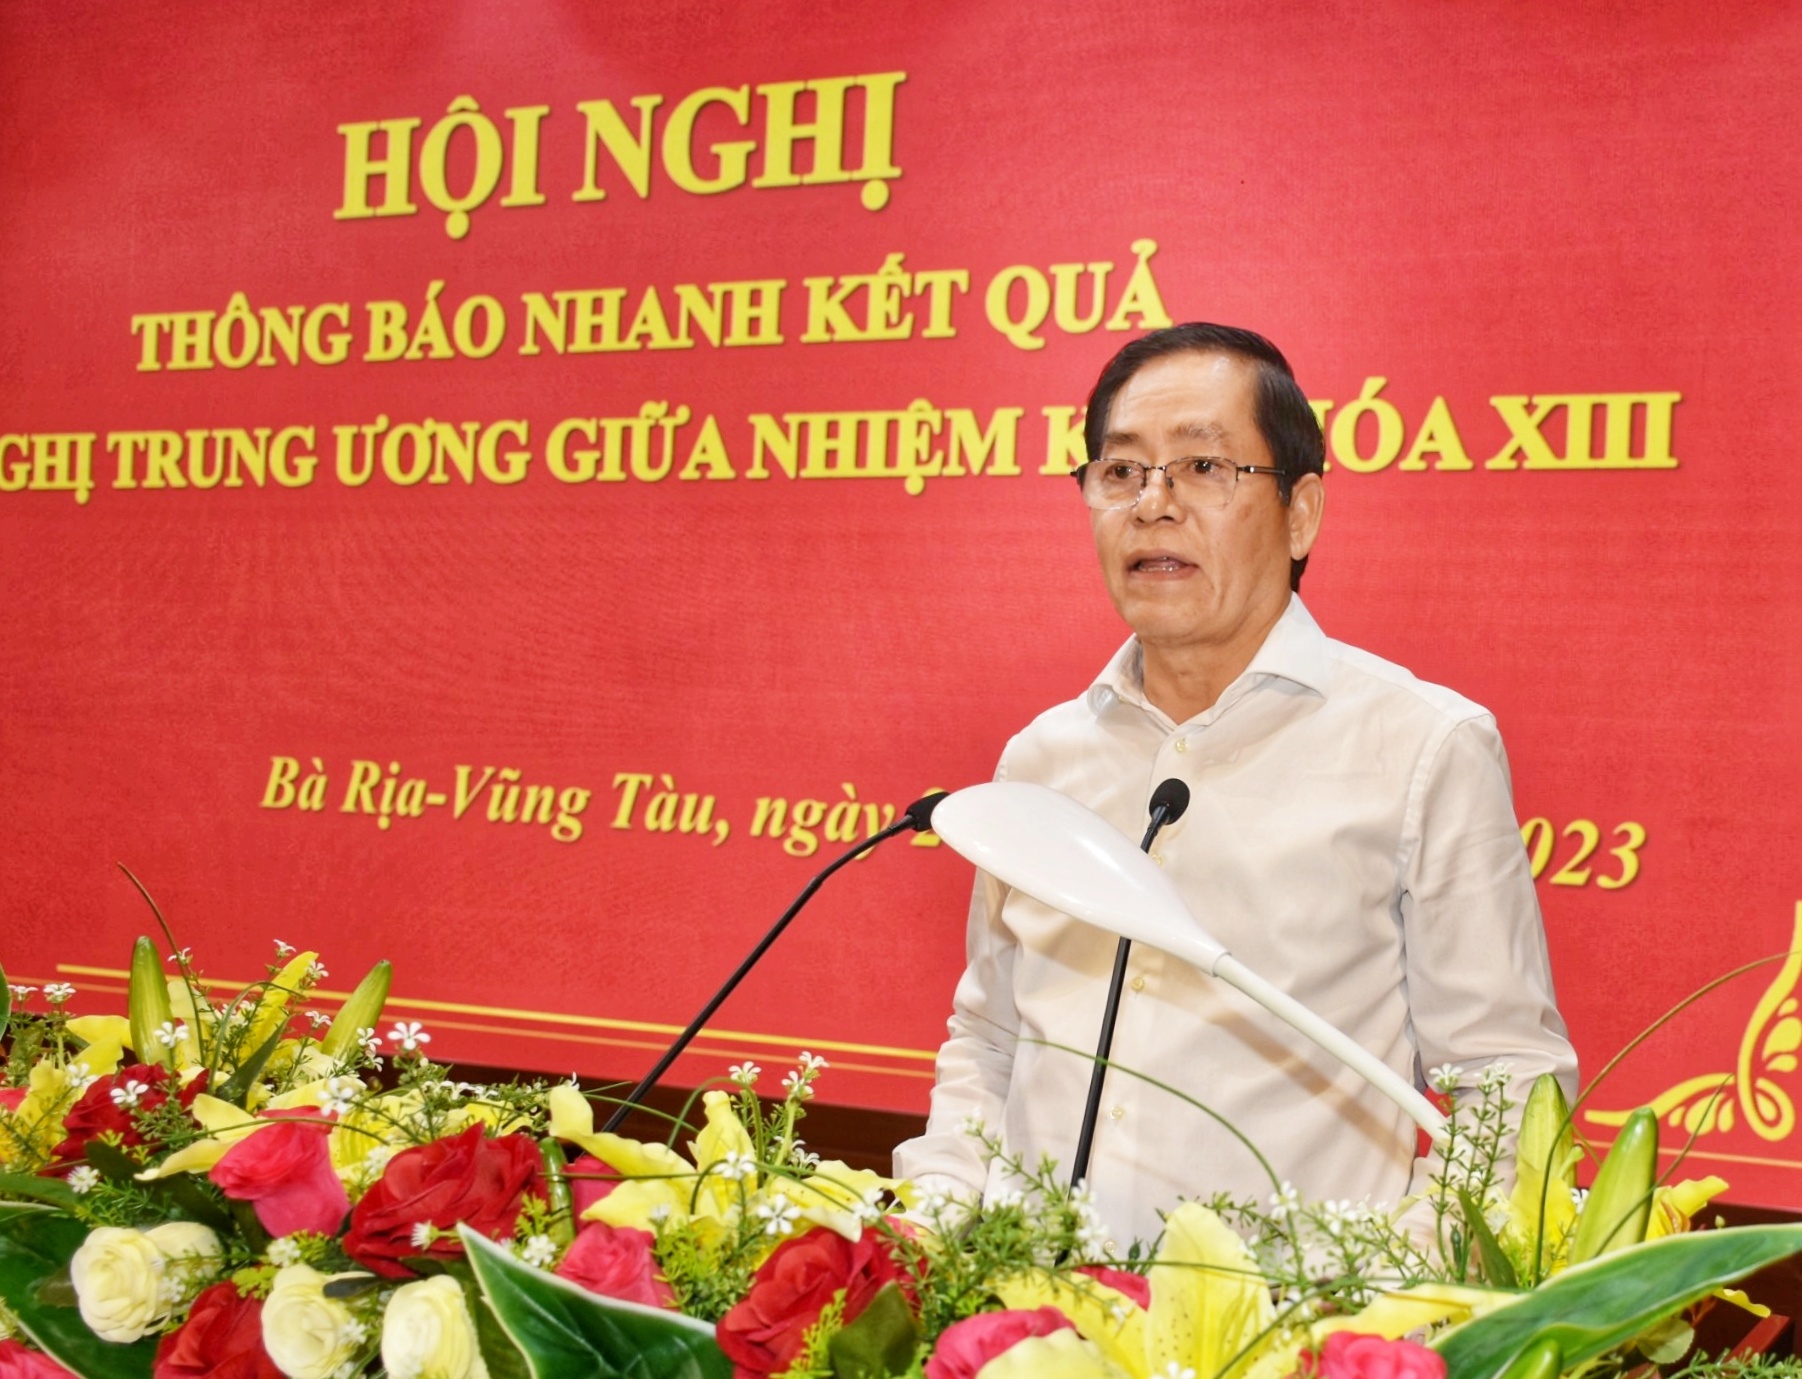 Ông Phạm Viết Thanh, Ủy viên Trung ương Đảng, Bí thư Tỉnh ủy, Chủ tịch HĐND tỉnh thông báo nhanh kết quả hội nghị giữa nhiệm kỳ Đại hội XIII của Đảng.